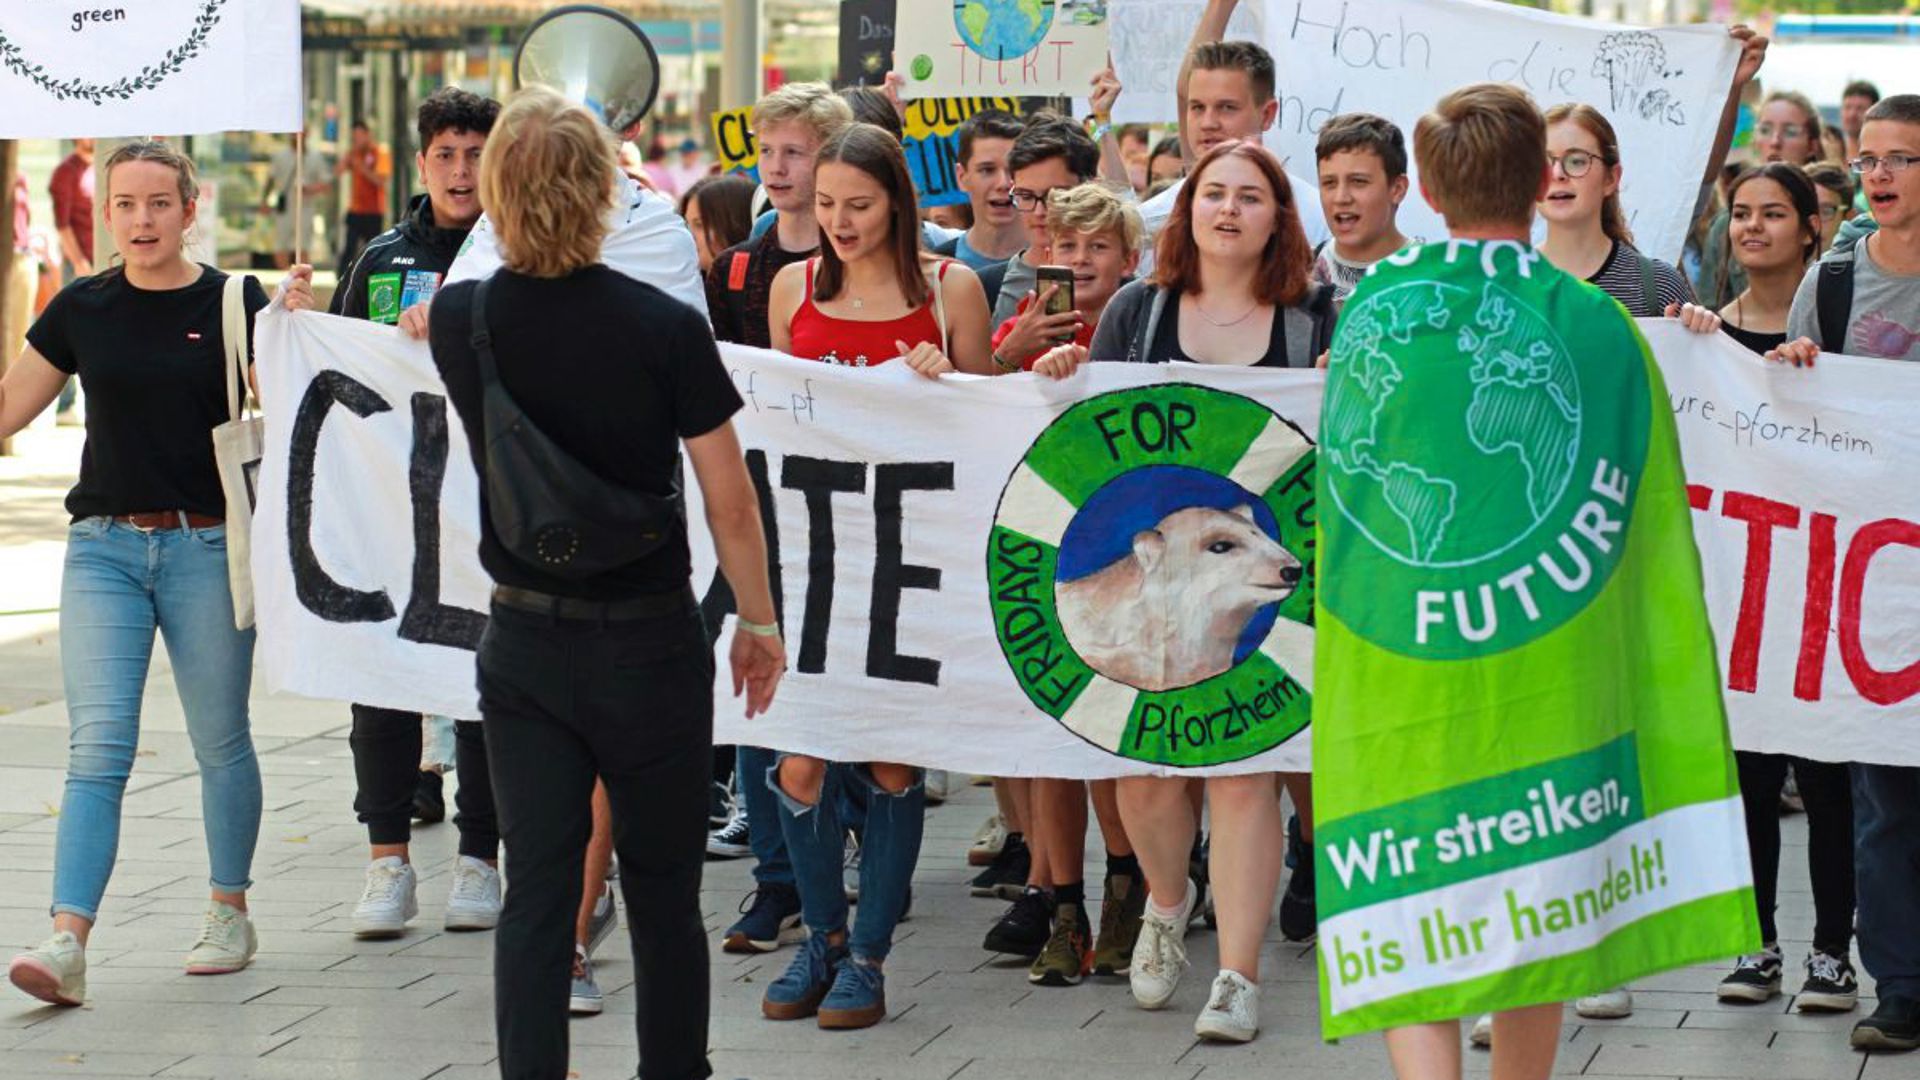 Klimademo am 19. Juli in Pforzheim: Obwohl die Teilnehmerzahl deutlich überschaubarer ist als bei den vergangenen Fridays-For-Future-Demonstrationen, legen die jungen Demonstranten sich bei den Sprechchören ins Zeug.